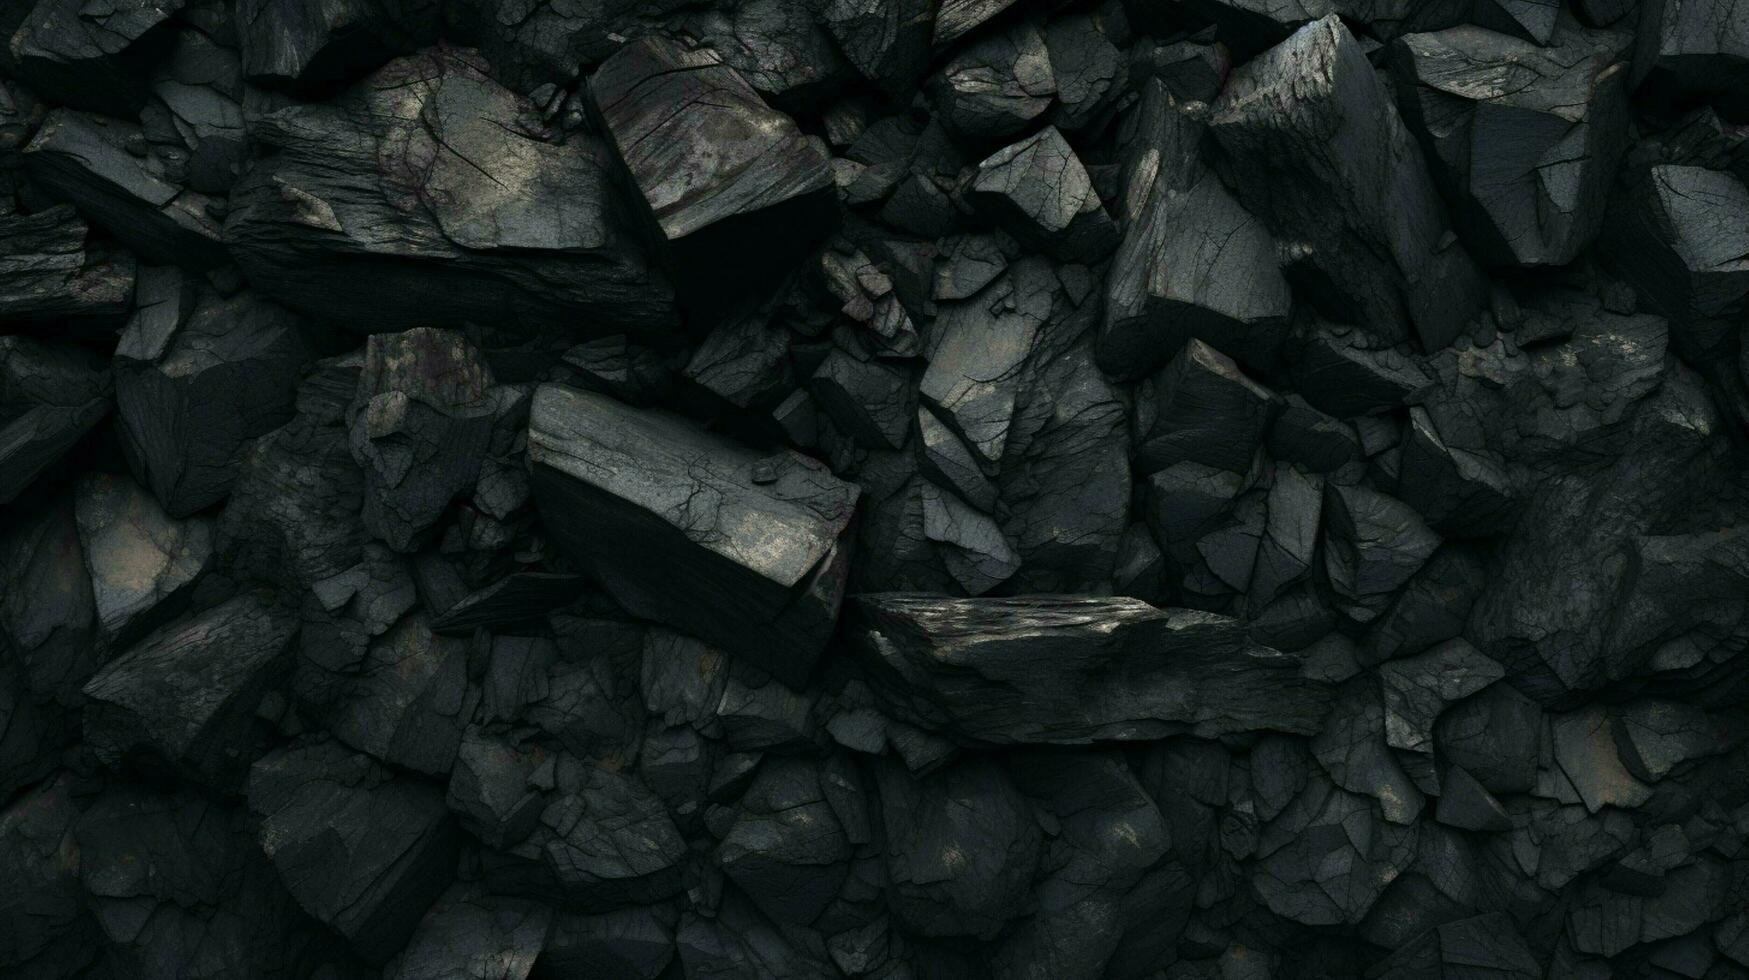 carbón antecedentes alto calidad foto